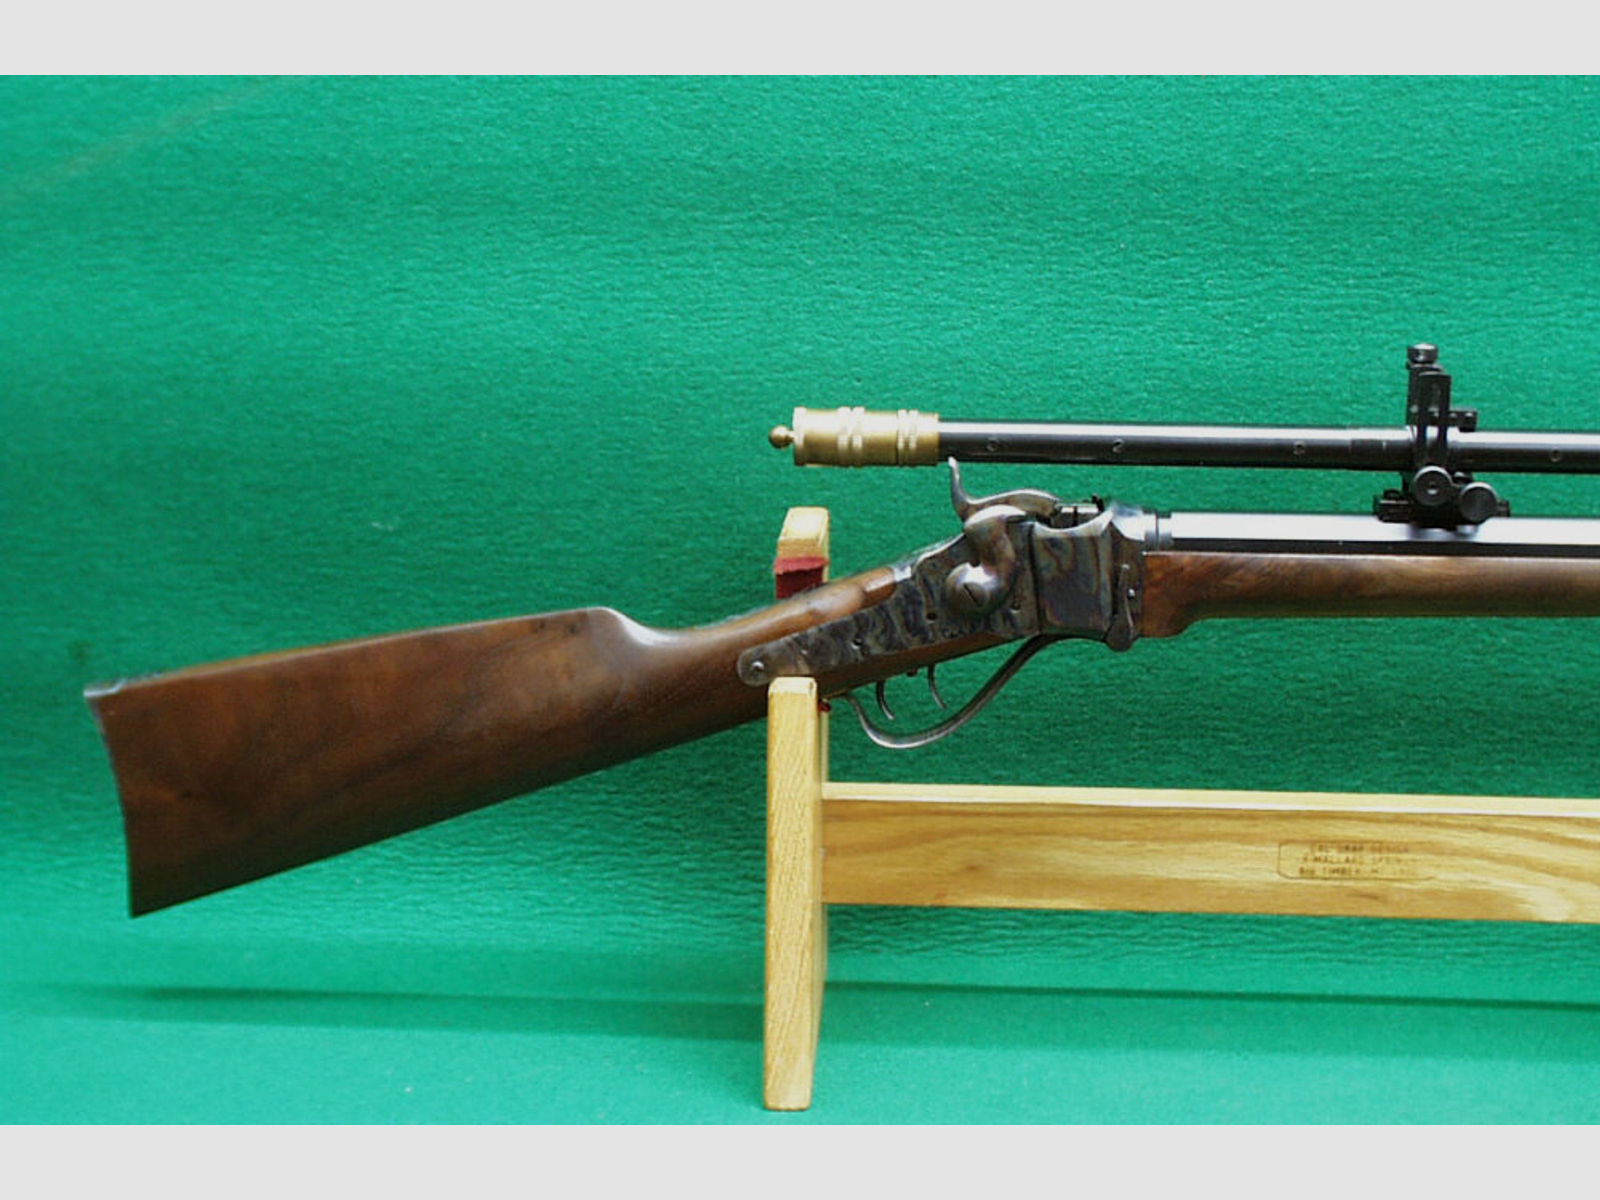 Shiloh	 Sharps Mod. 1874 Hartford Rifle